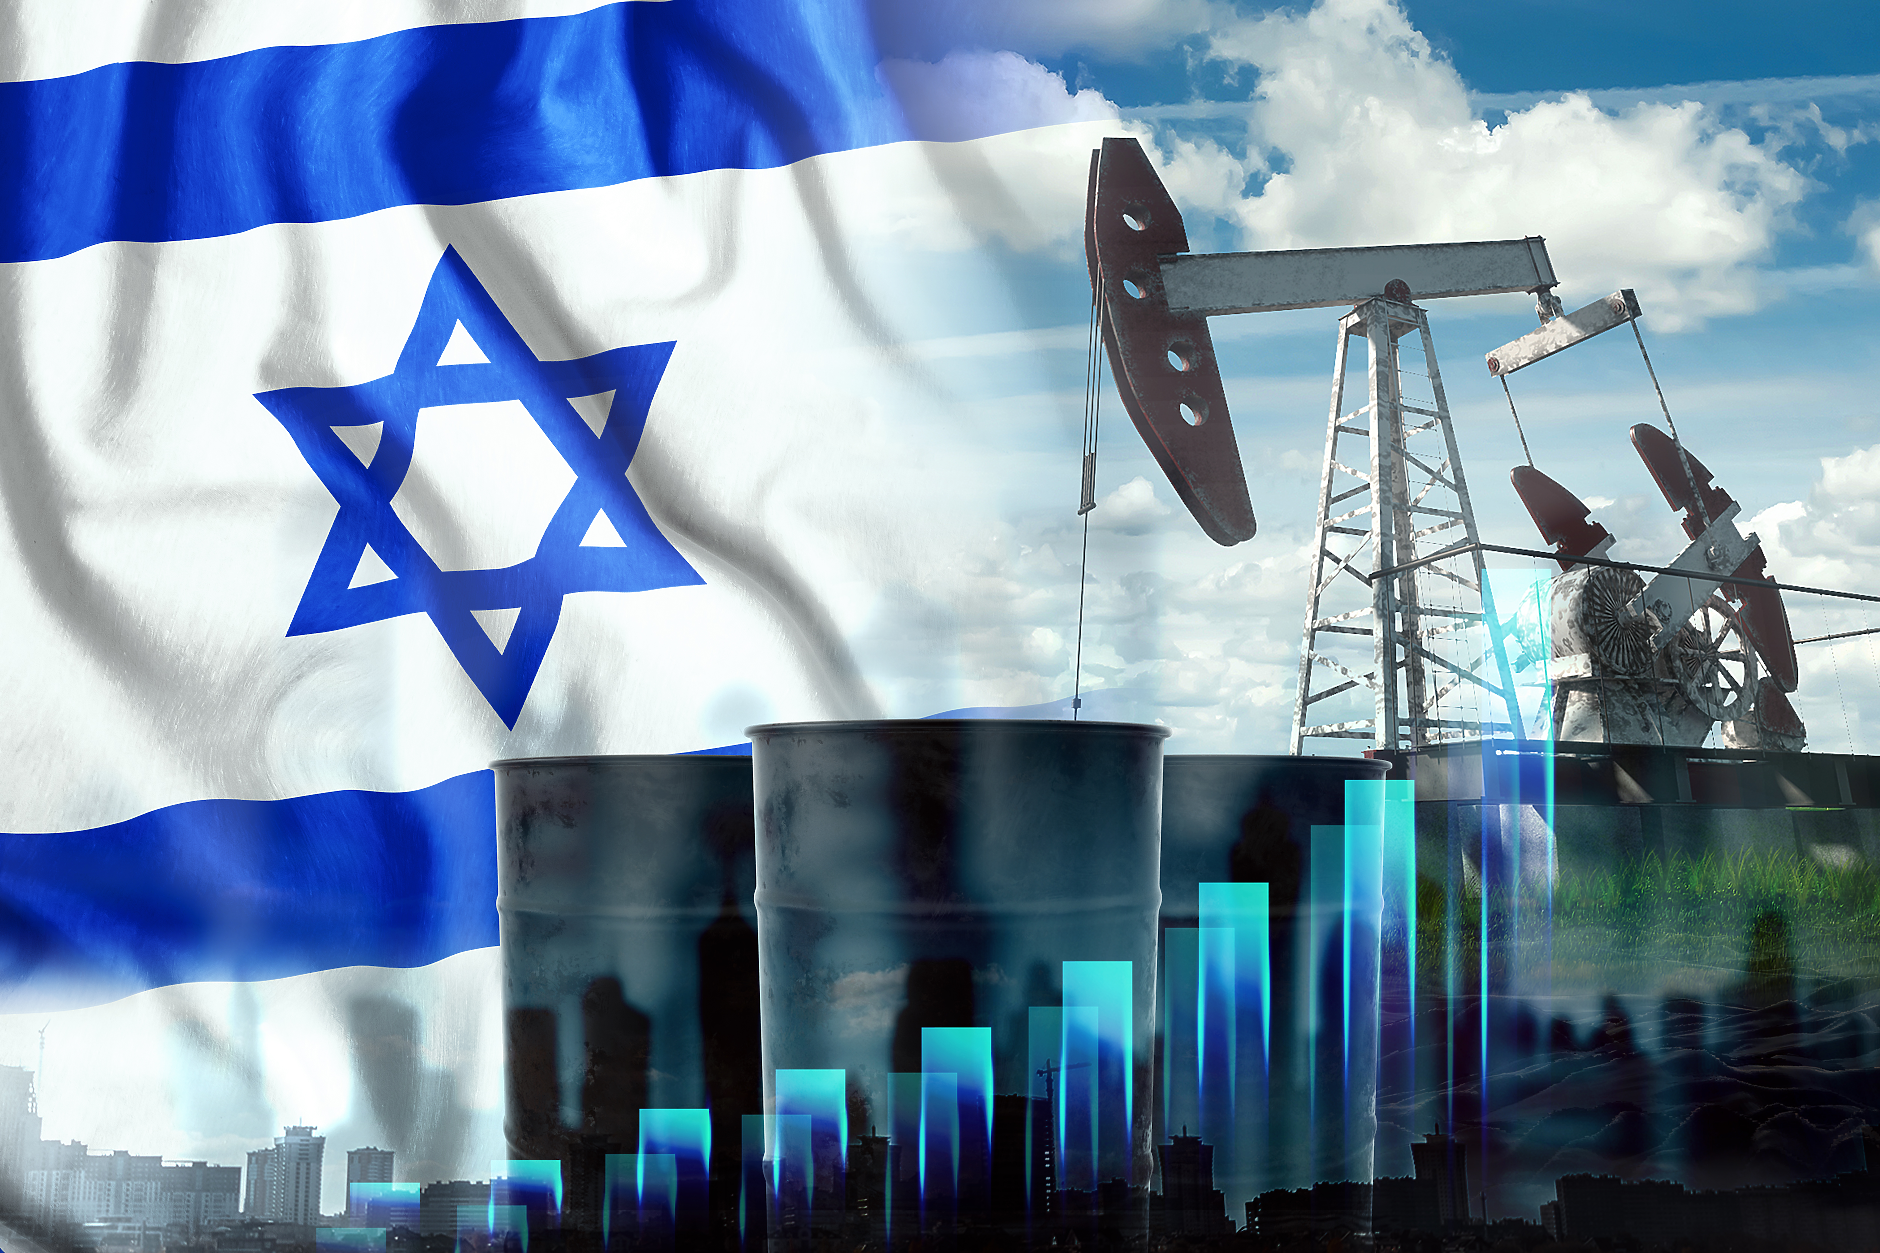 Израел  спря временно добива на газ  в едно от най-големите си находища